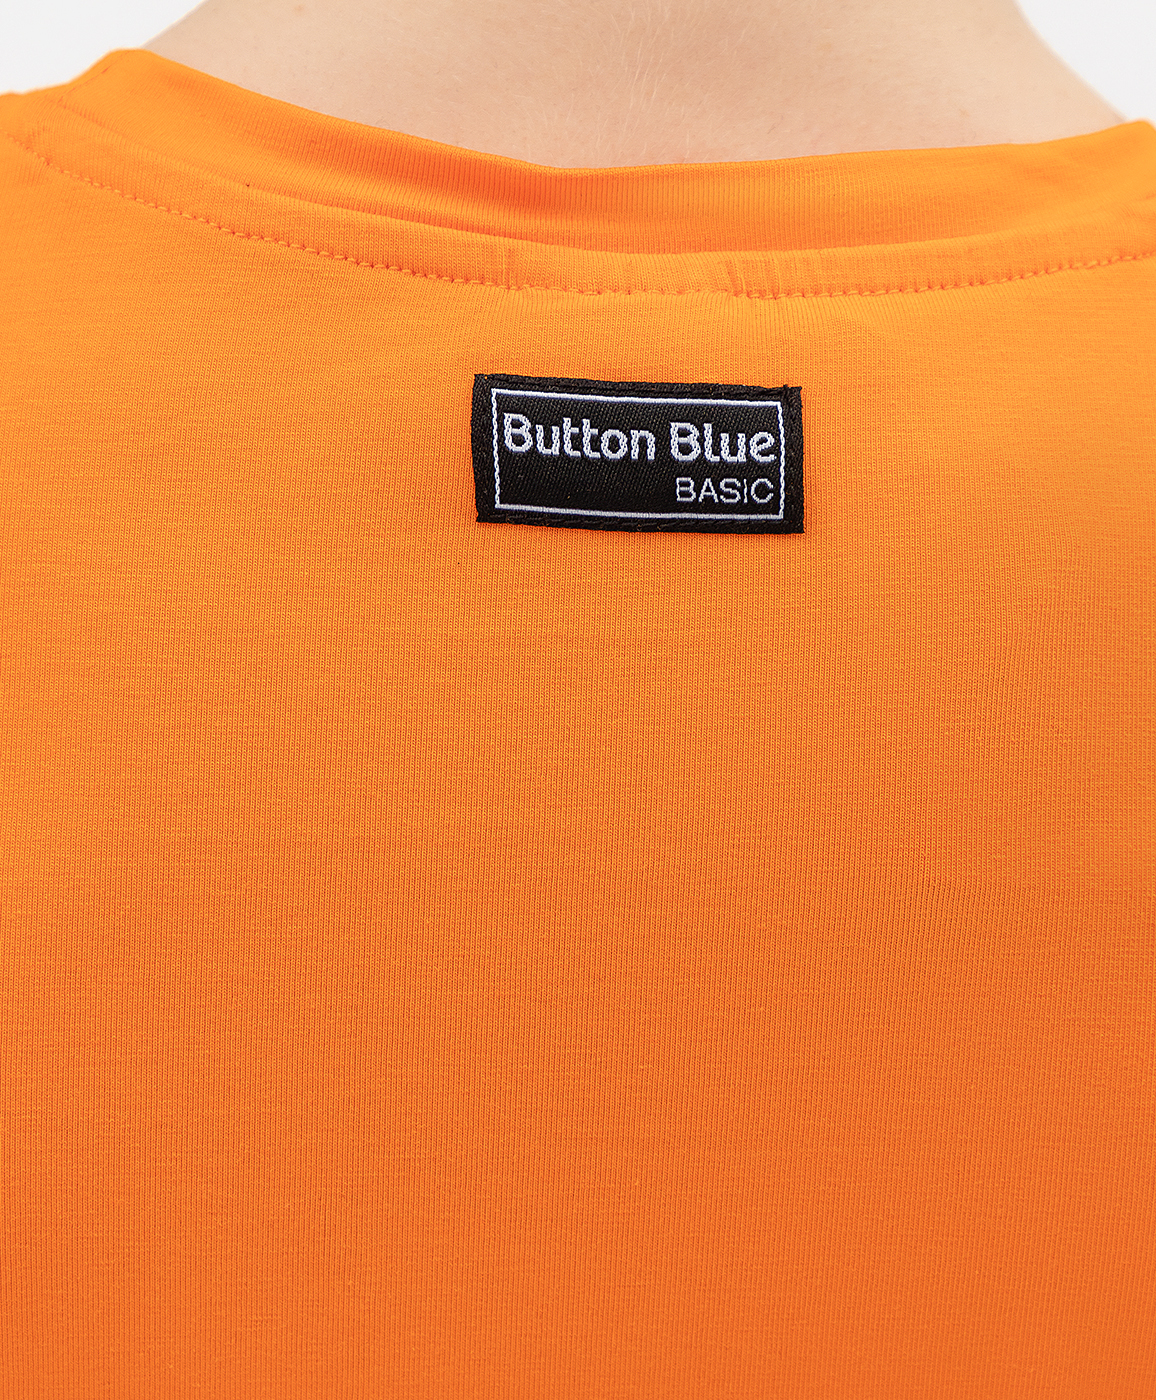 Оранжевая футболка Button Blue 121BBBB12013200, размер 110, цвет оранжевый - фото 3